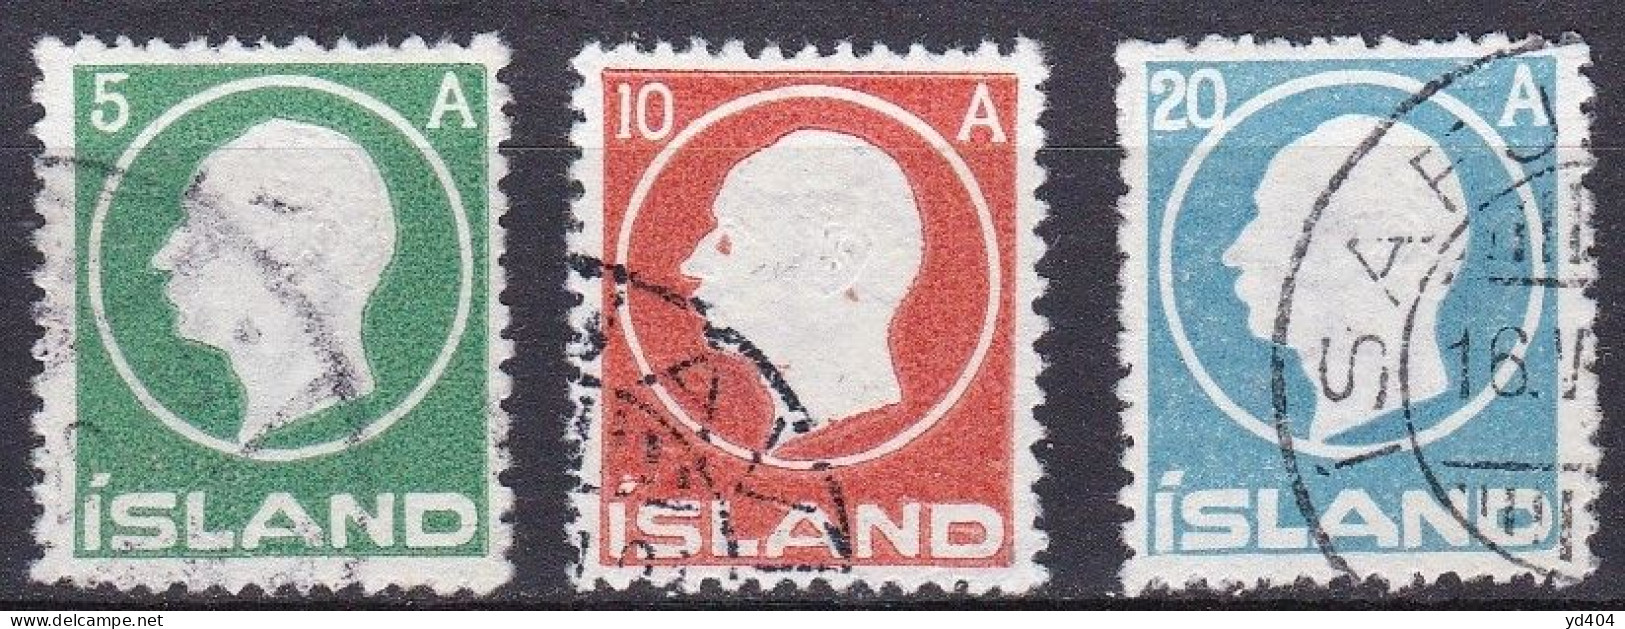 IS012F – ISLANDE – ICELAND – 1912 – KING FRDERIK VIII – SG # 102/4 USED 46 € - Usati